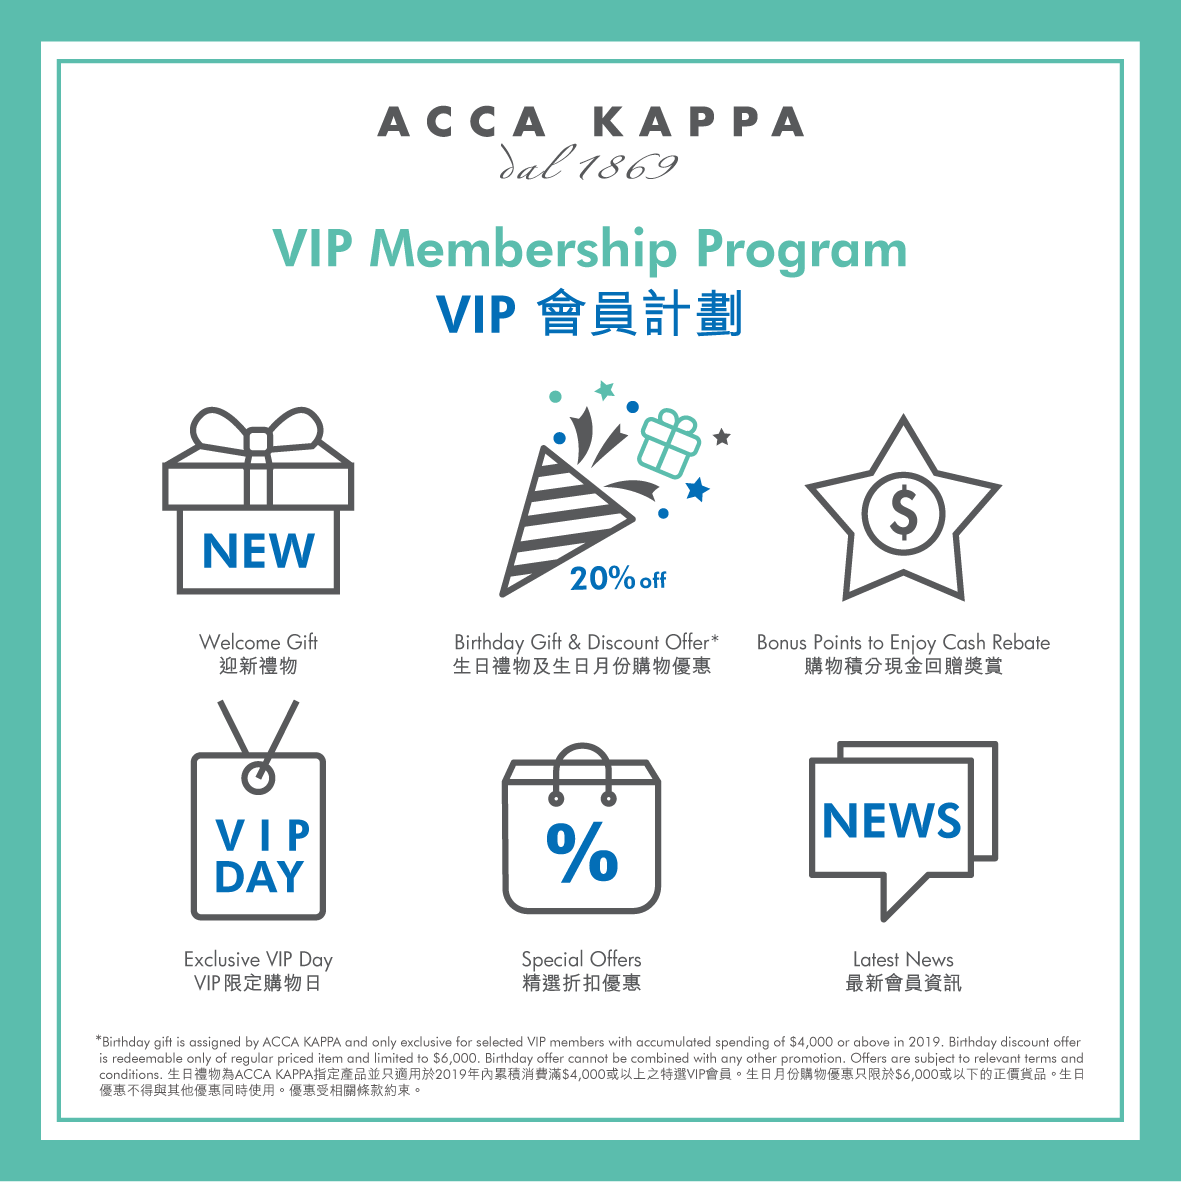 【📣全新特選VIP會員生日禮遇．驚喜登場】   生日是令人最期待的日子，ACCA KAPPA為了與尊貴的您一同慶祝大日子，特別推出全新生日禮遇！